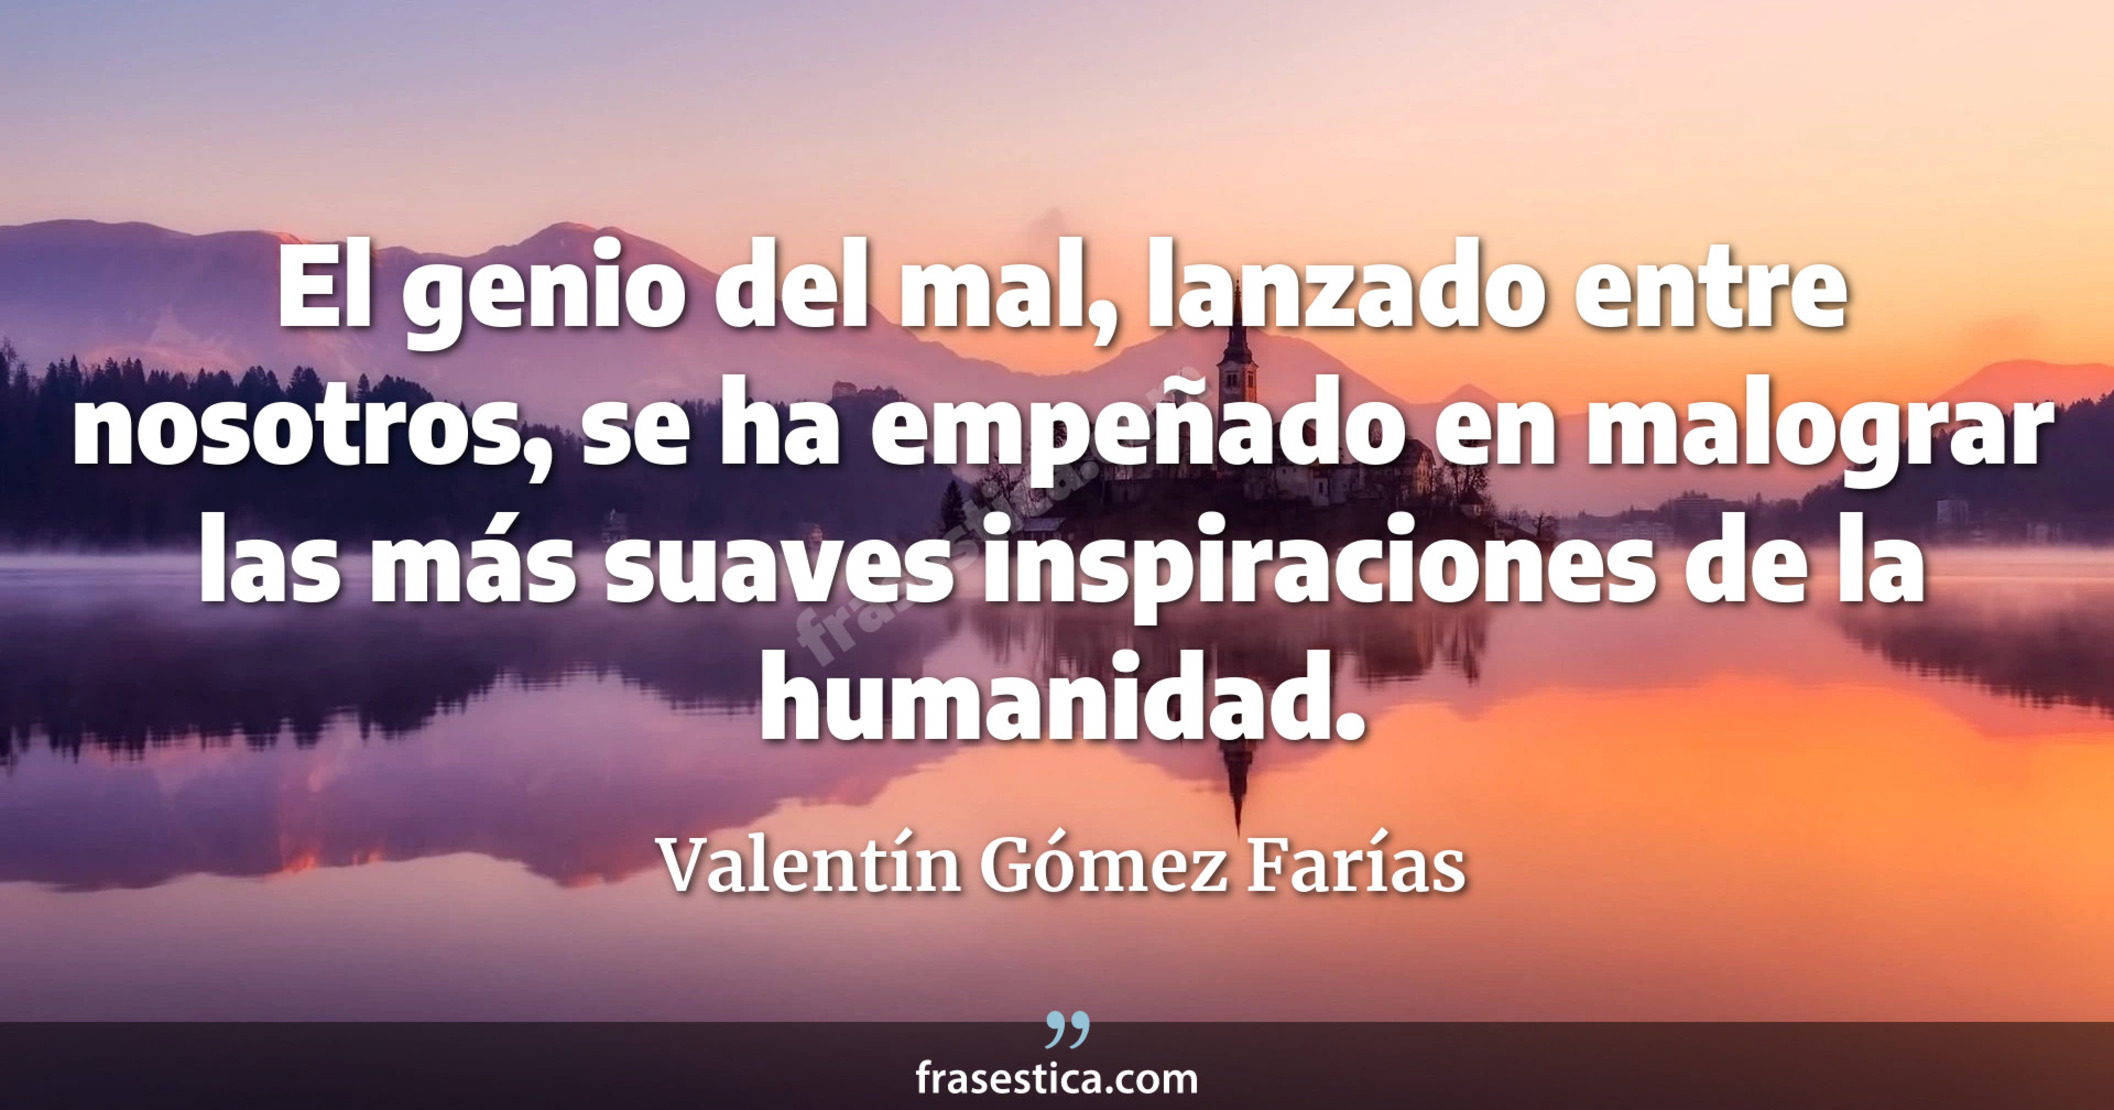 El genio del mal, lanzado entre nosotros, se ha empeñado en malograr las más suaves inspiraciones de la humanidad. - Valentín Gómez Farías